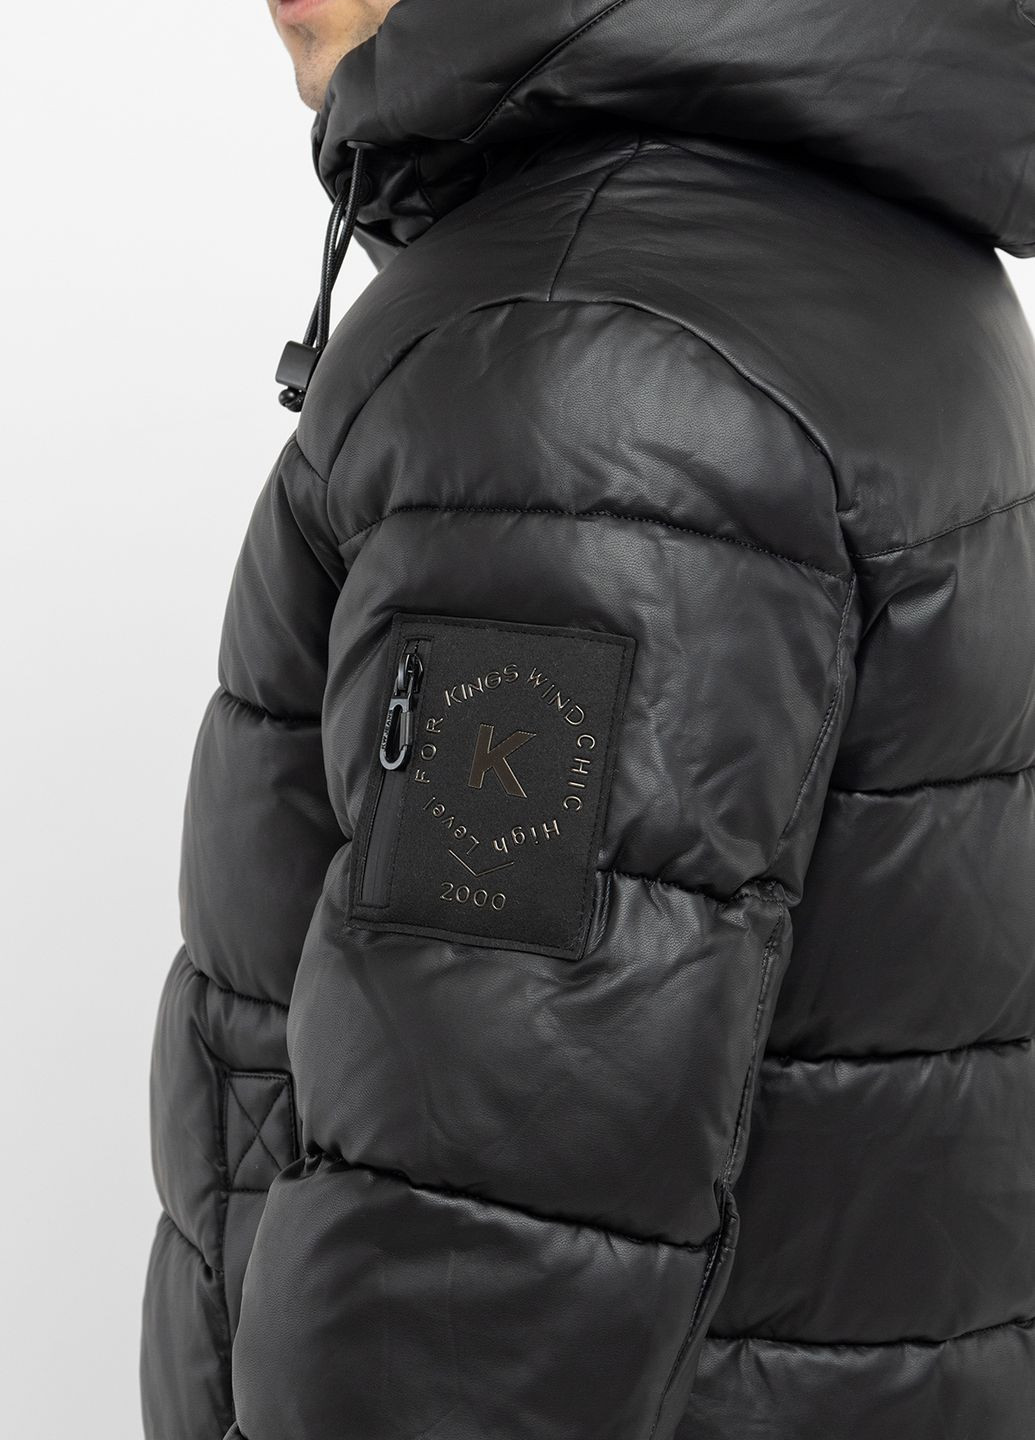 Черная зимняя куртка мужская цвет черный цб-00220557 Kings Wind